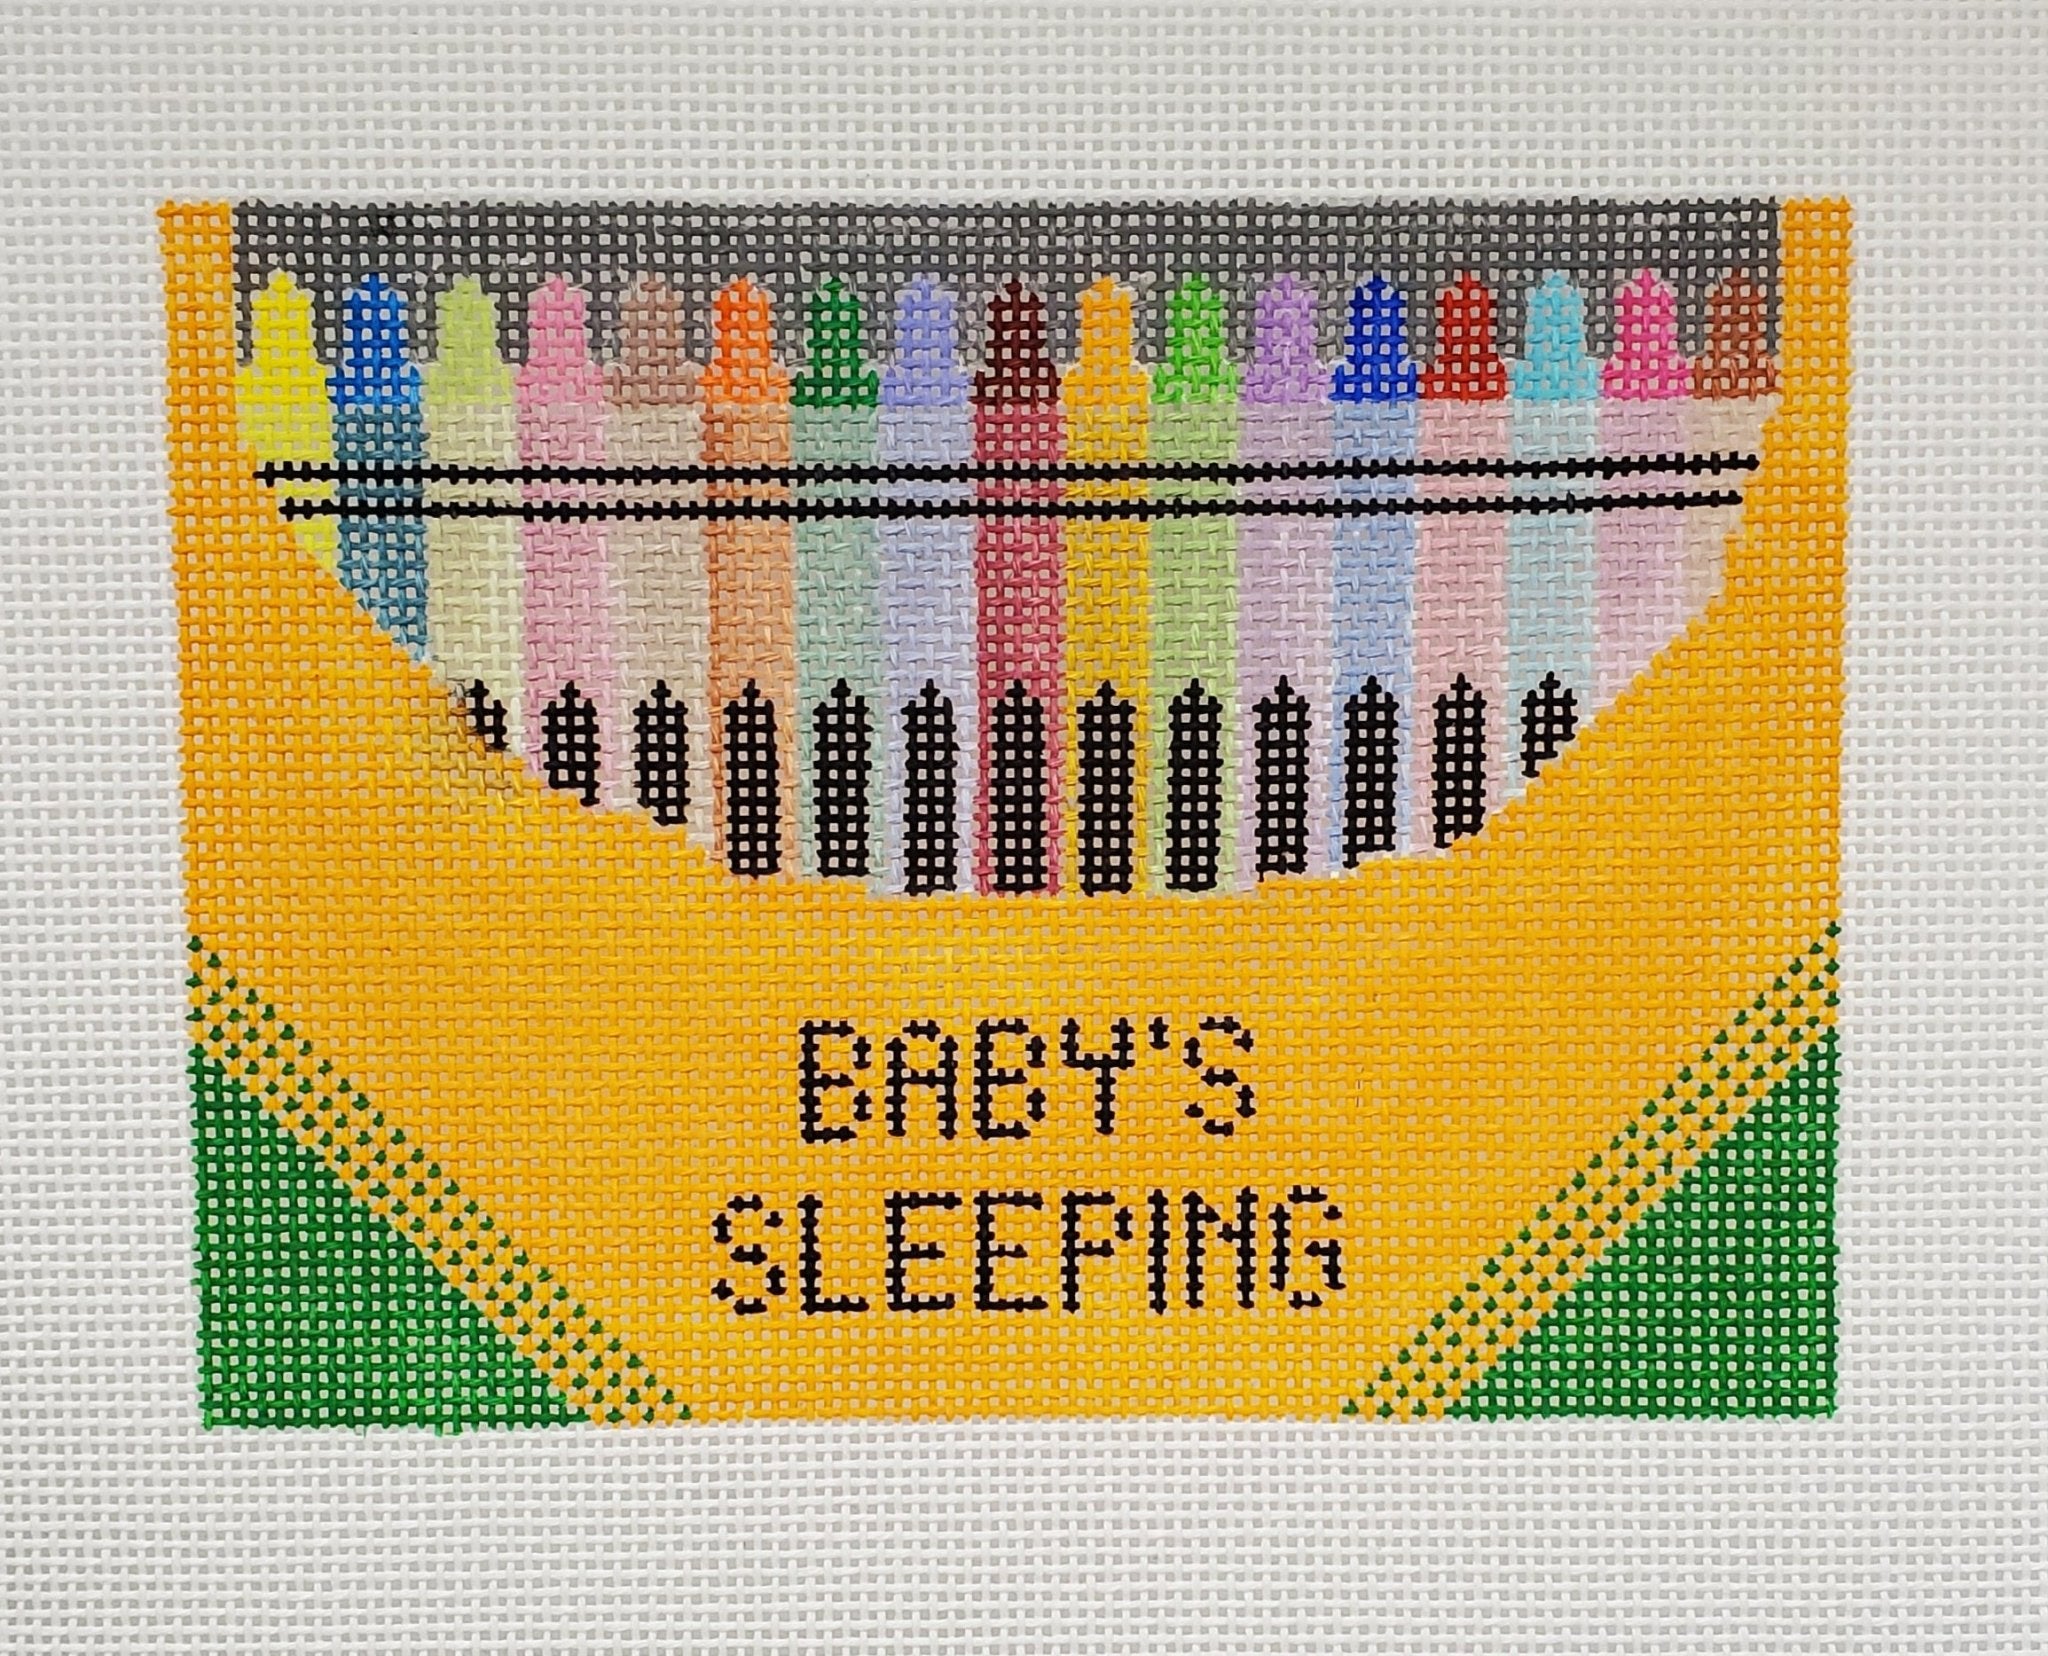 Crayons Baby Sleeping - The Flying Needles